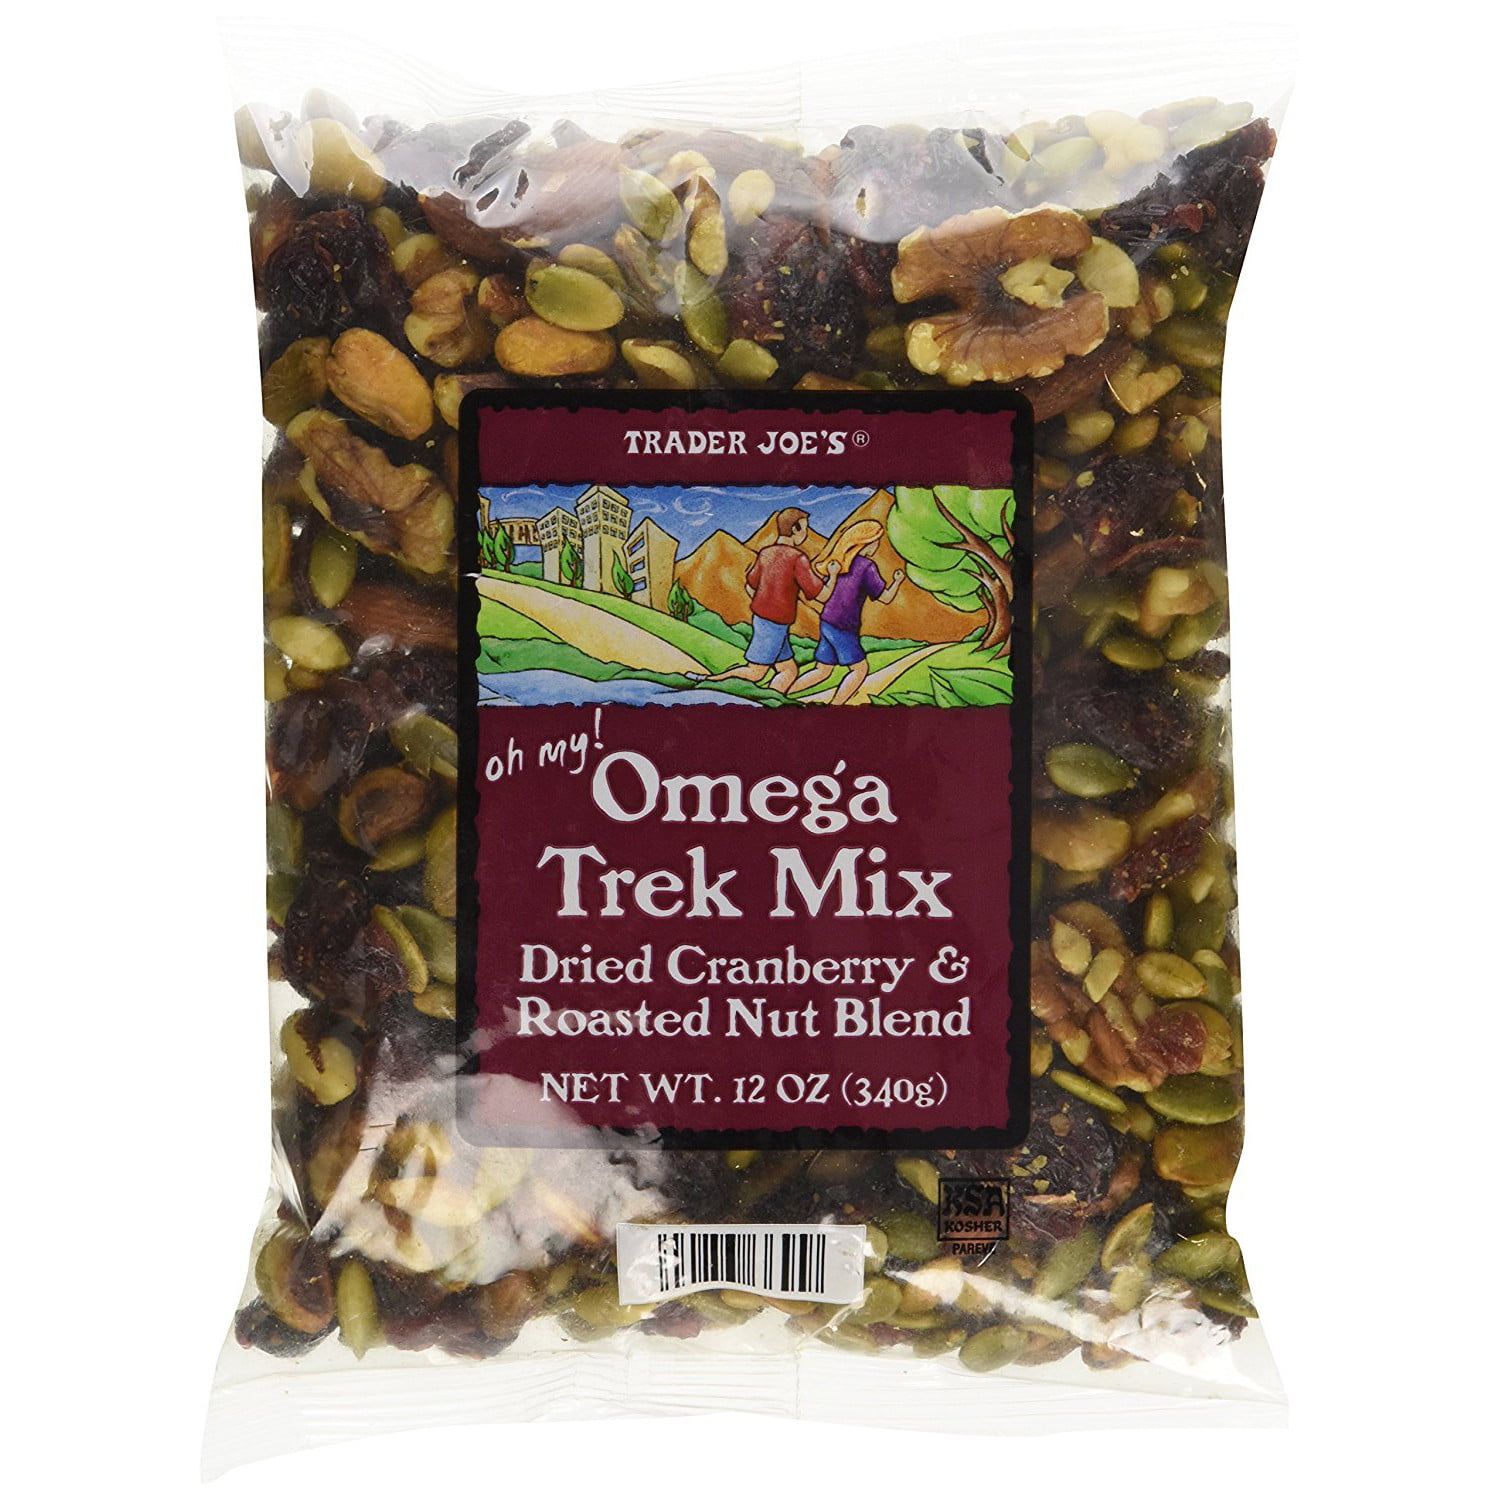 trader joe's omega trek mix nutrition